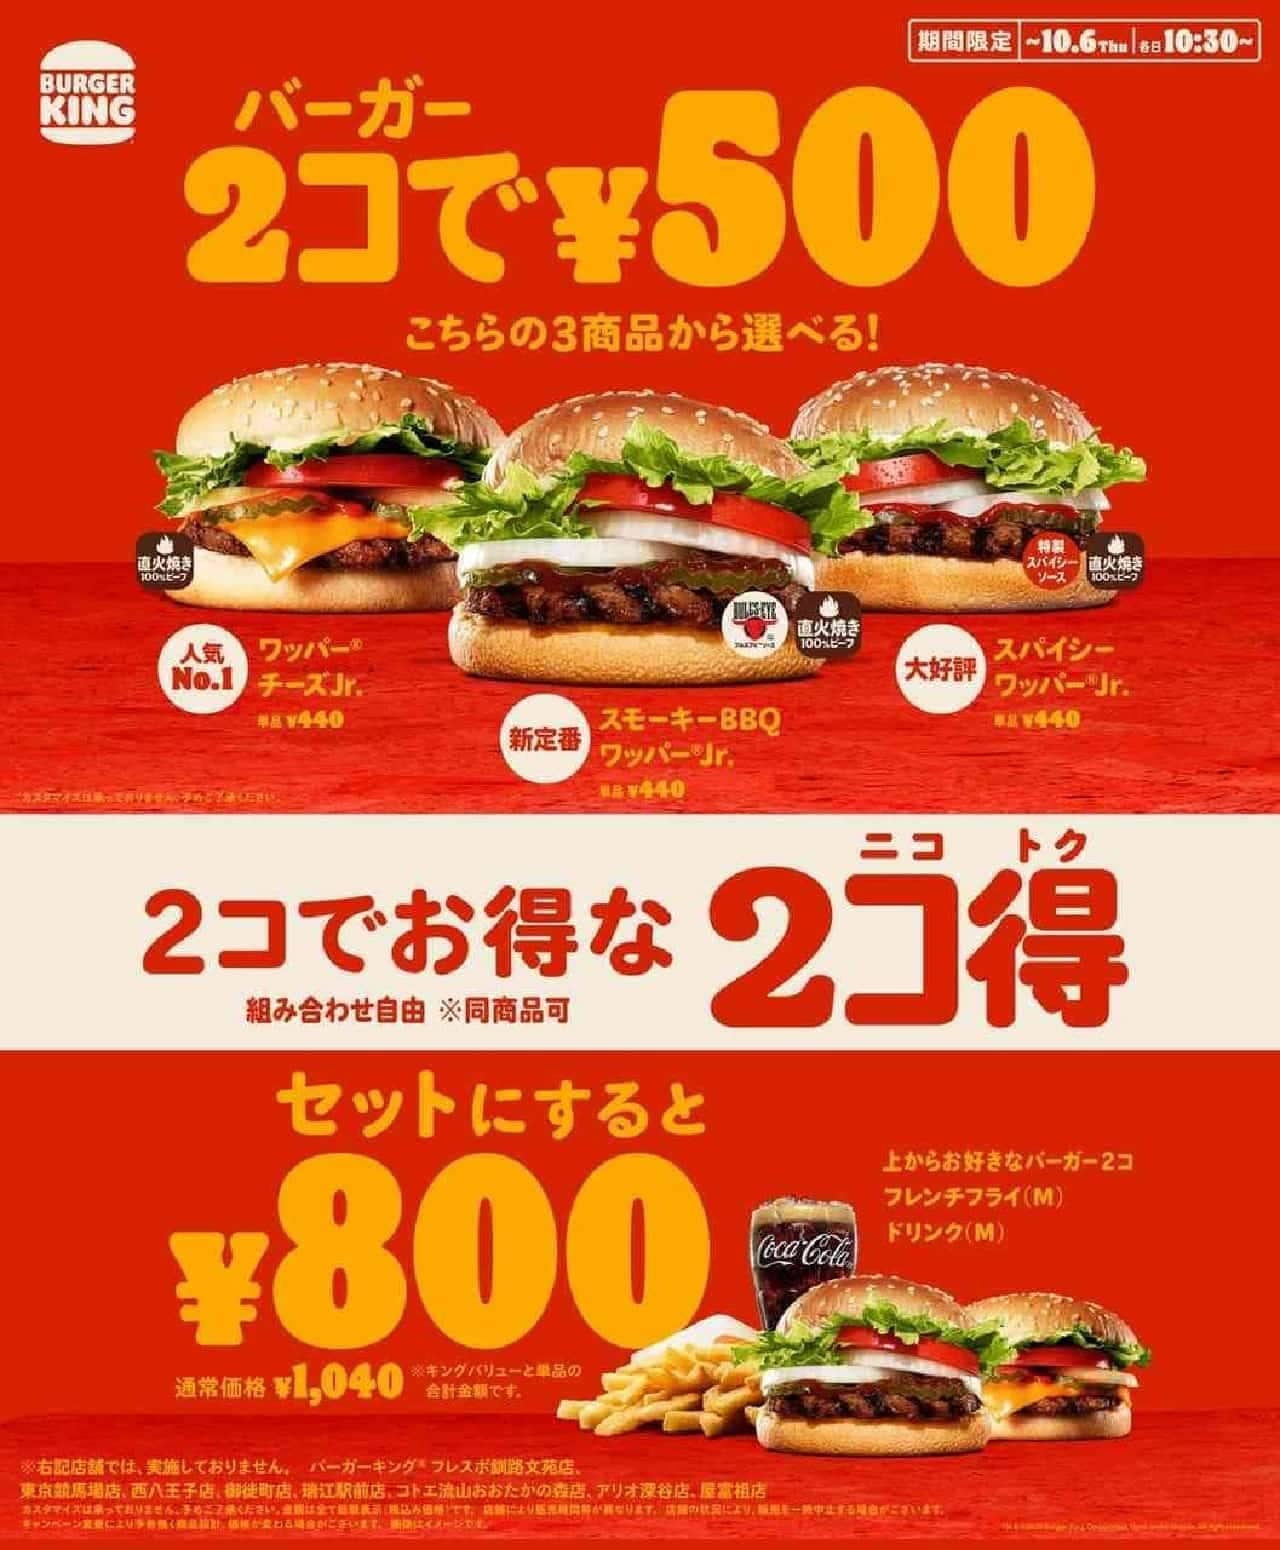 Burger King 43% savings "2 kokuoku (nikotoku)".